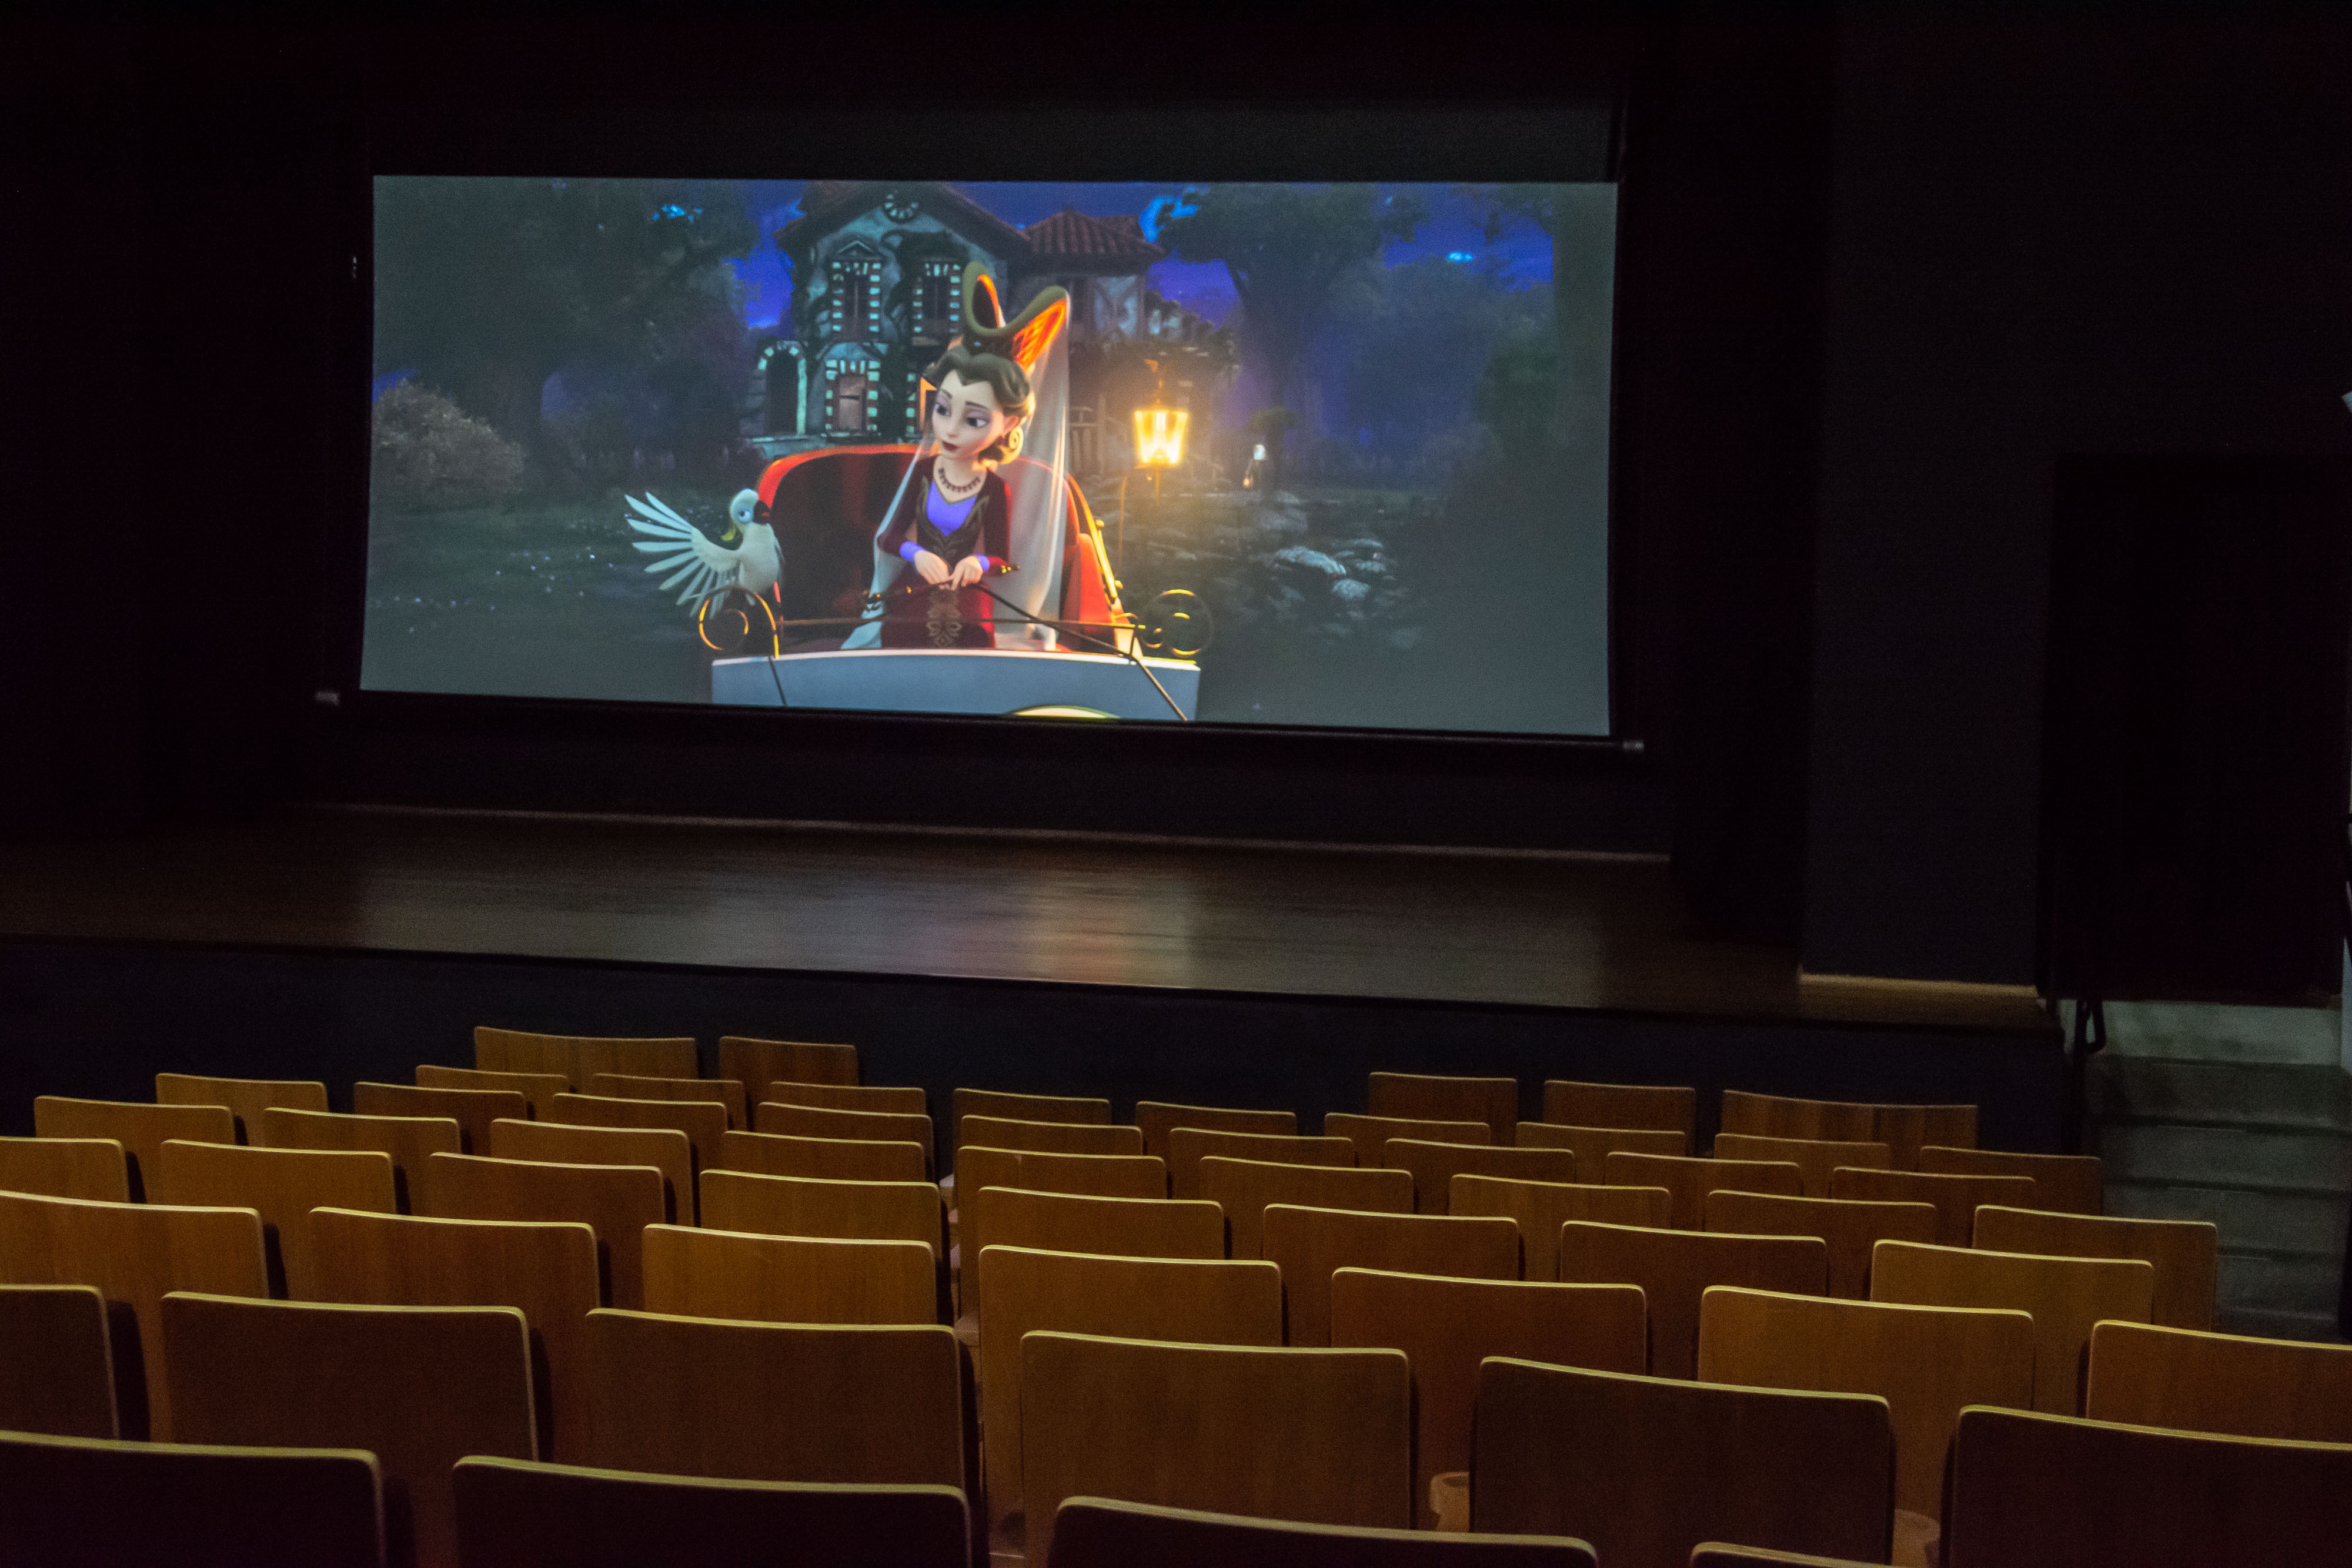 Drama, animação e terror: novos filmes entram em cartaz no Teatro da Vila -  Prefeitura de Curitiba